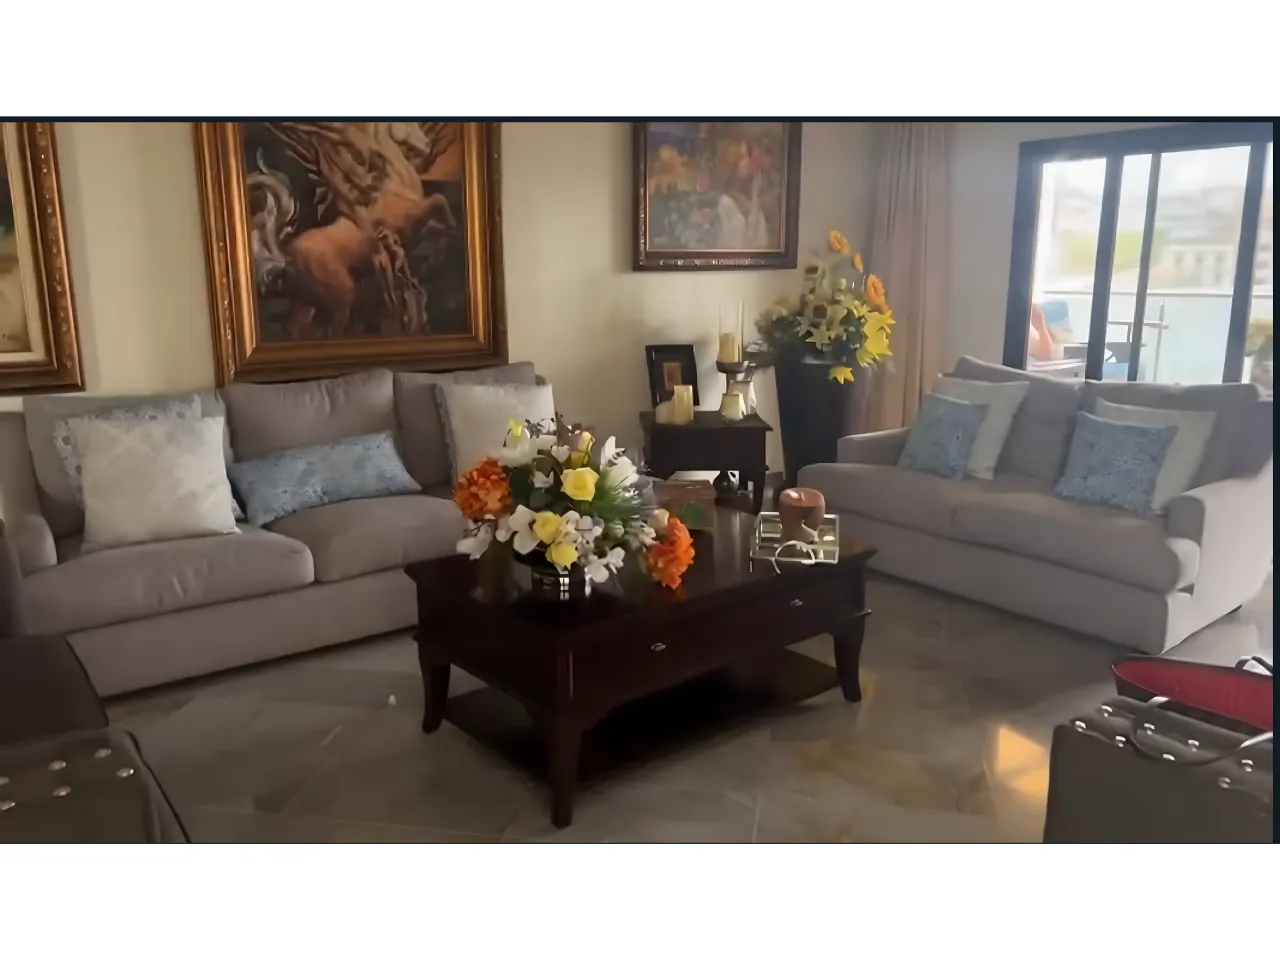 Sala de estar con cerámica de madera, mueble de color blanco, cuadros de pintura en la pared y una mesa de centro con ramos de flores.